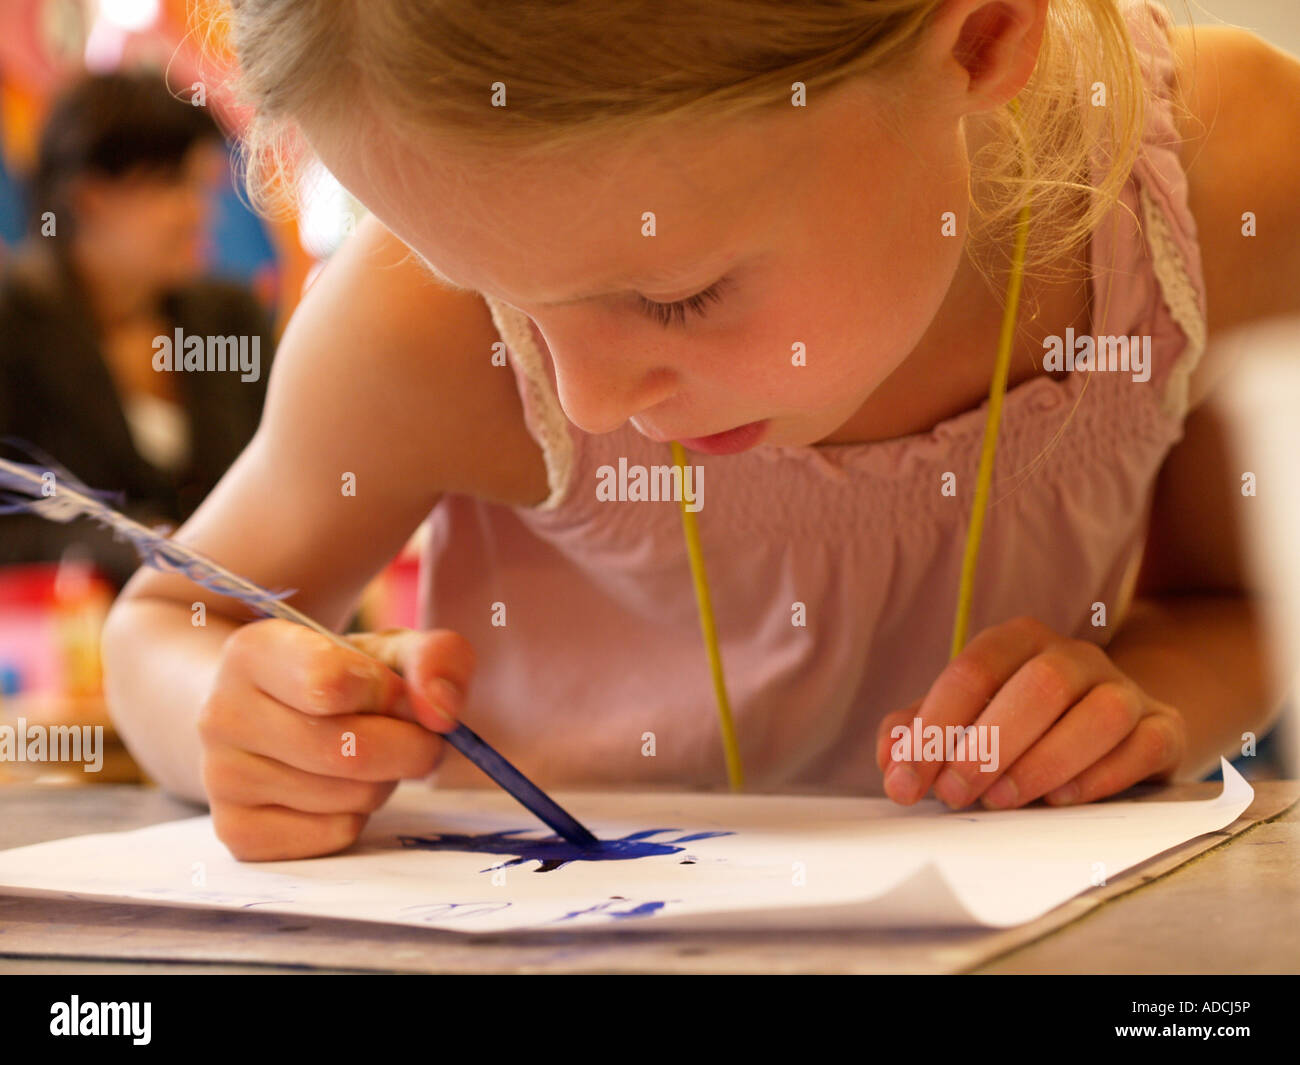 Petite fille enfant concentré à l'aide de plume suranné, plume d'oie pour l'écriture et le dessin à l'encre bleue Banque D'Images